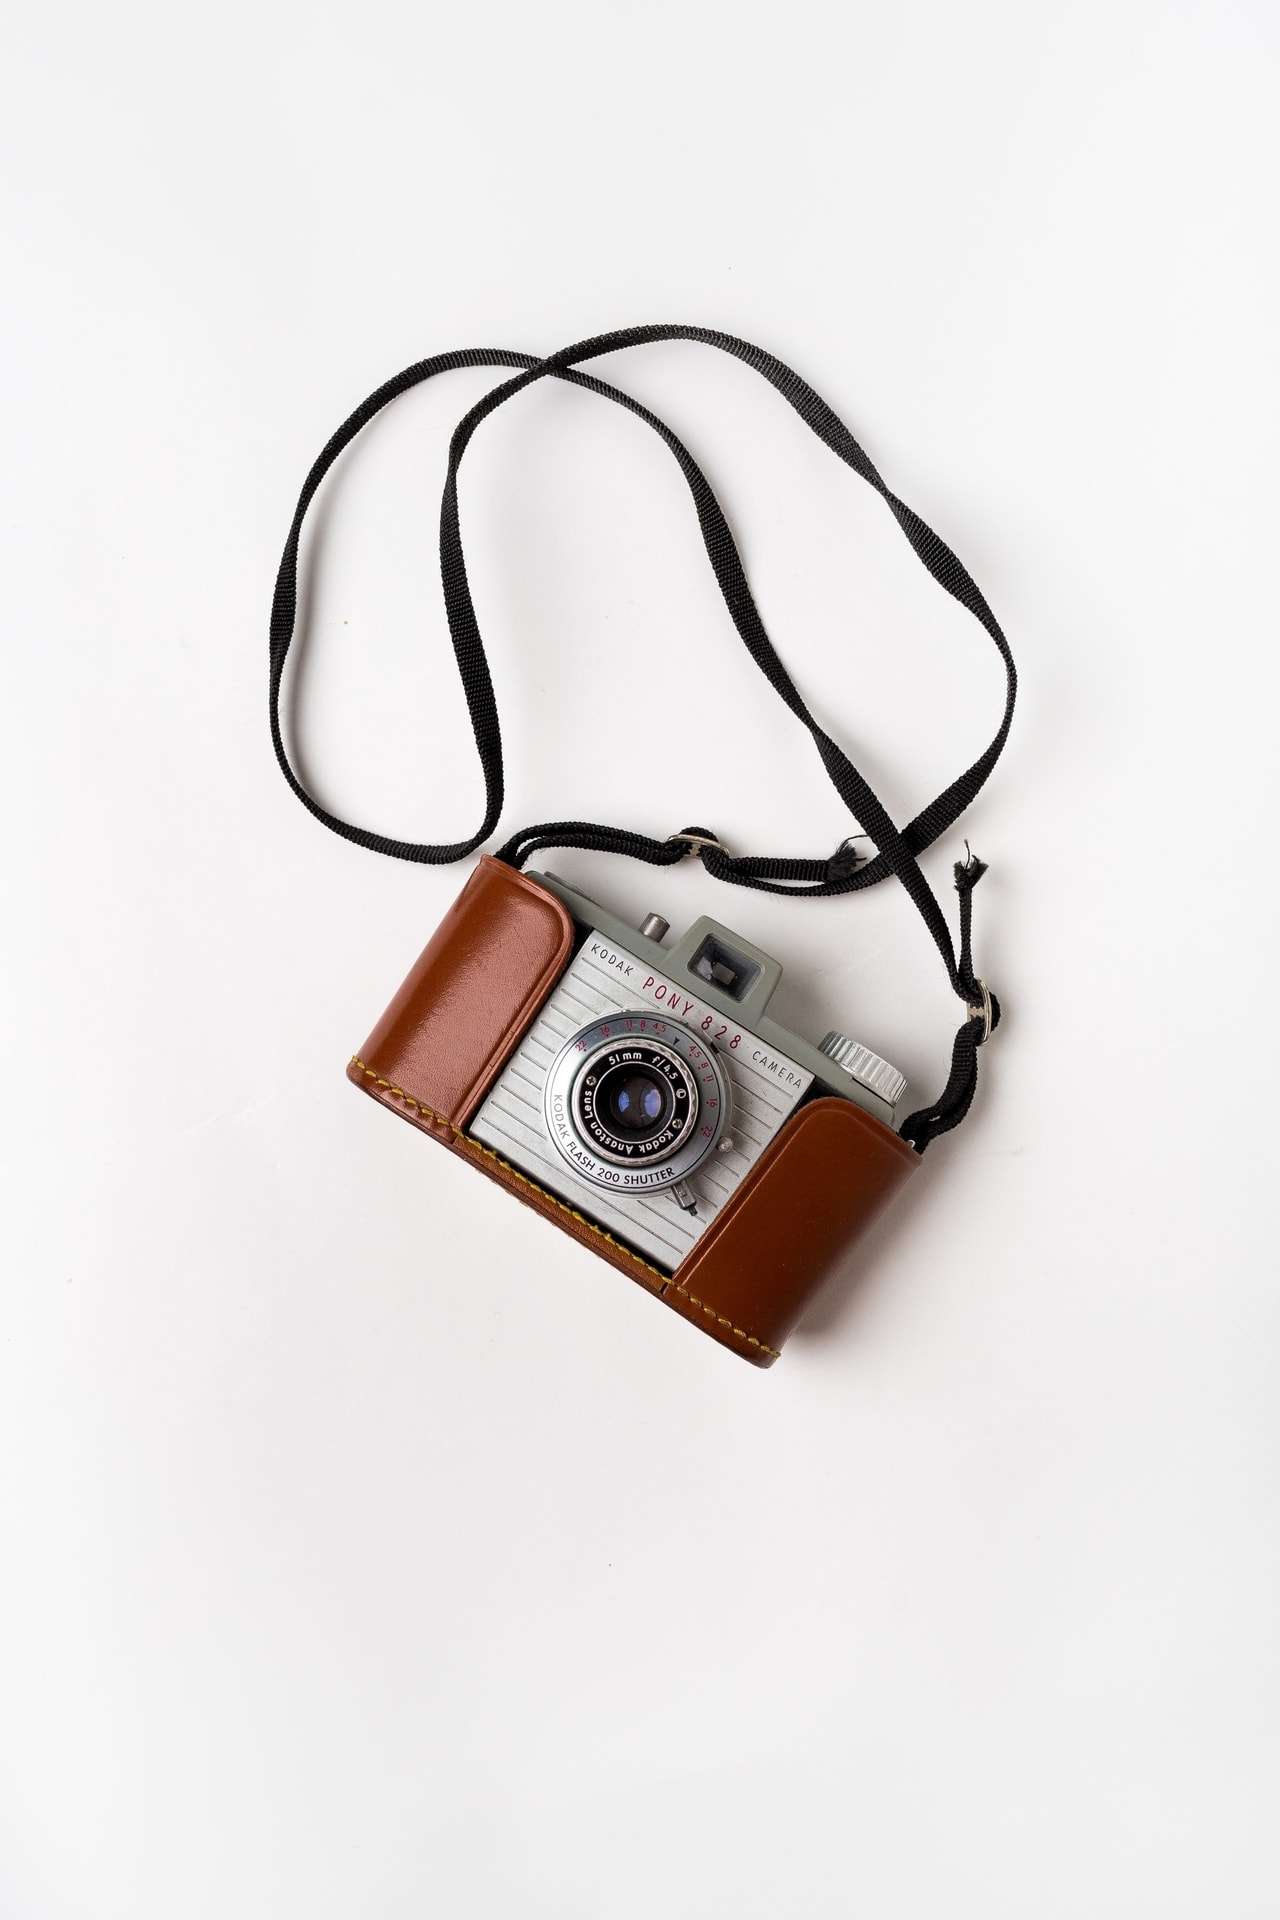 Vintage kodak foto kamera s koženým pláštěm a popruhem